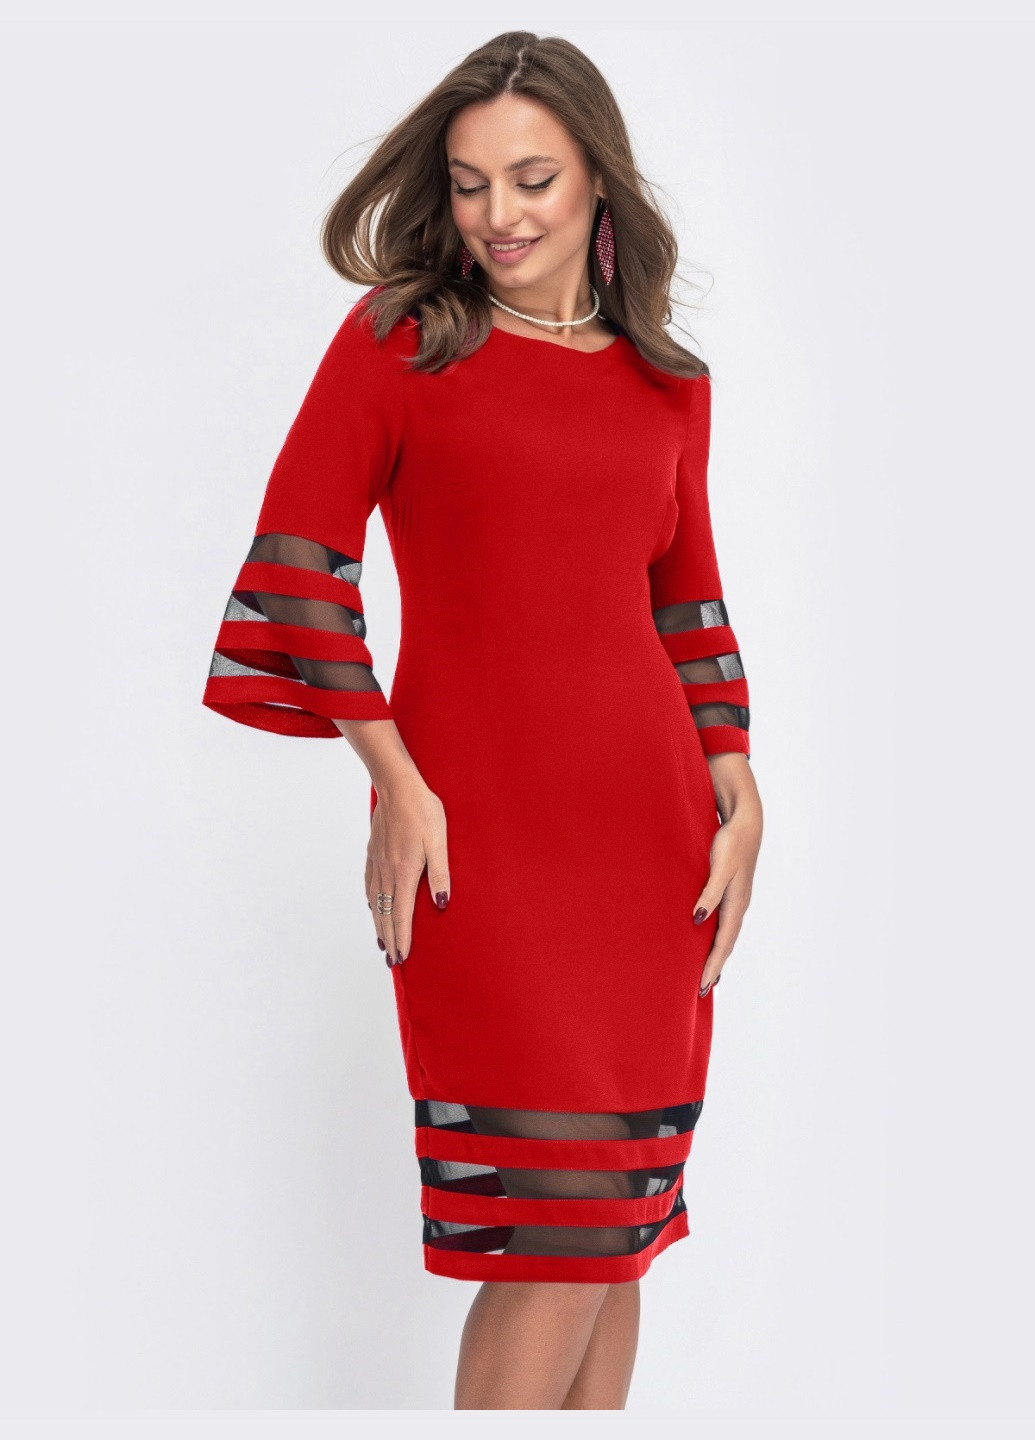 Червона червона сукня-футляр з прозорими вставками на рукавах Dressa